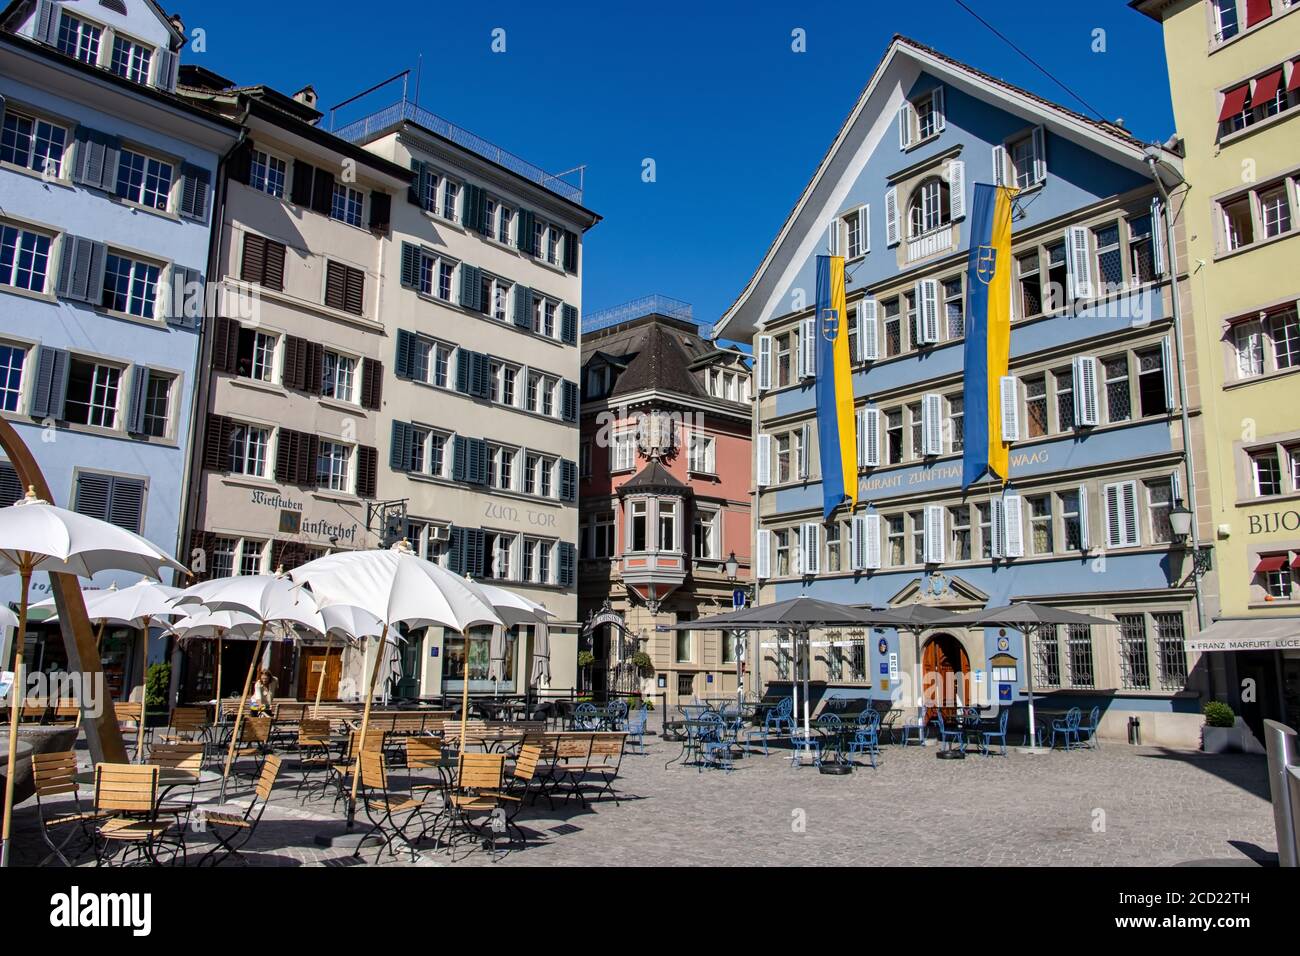 ZURICH, SWITZERLAND, JUL 30 2020, The historial square Munsterhof with the guild house Zunfthaus zur Waag in Zurich, Switzerland. Stock Photo